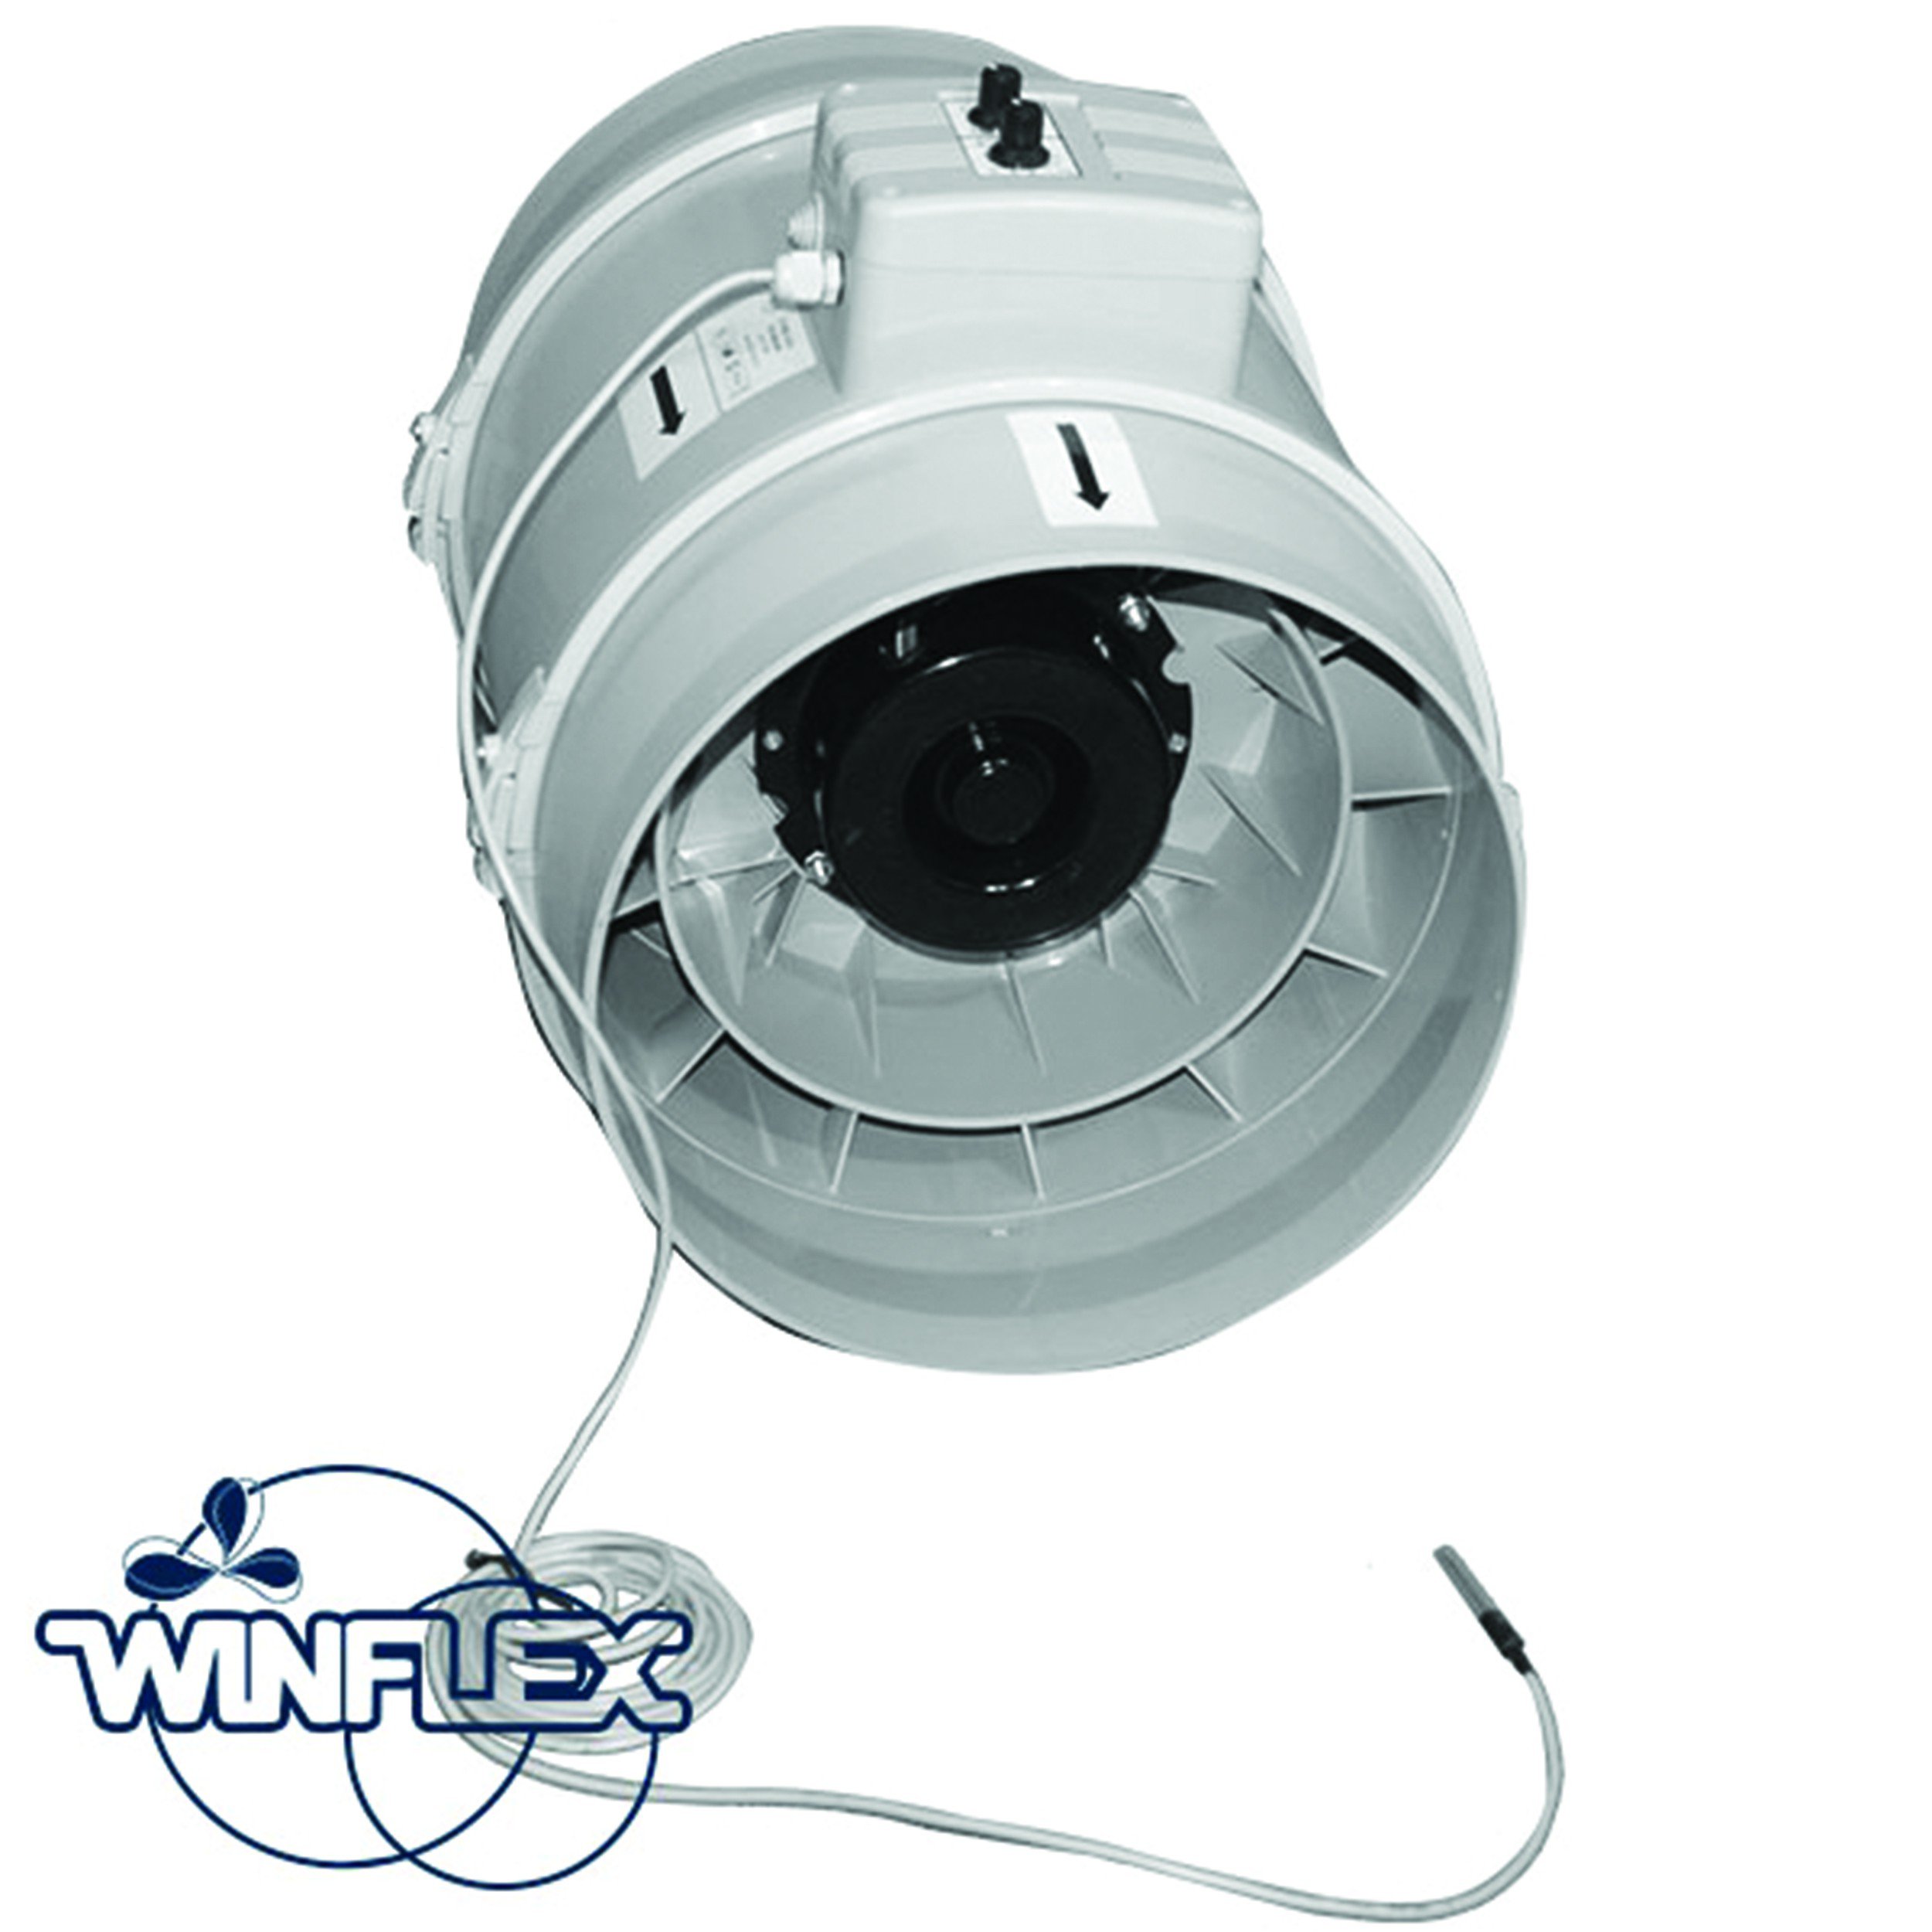 winflex-tt-pro-u-variateur-thermostat-315mm-2350m3-h